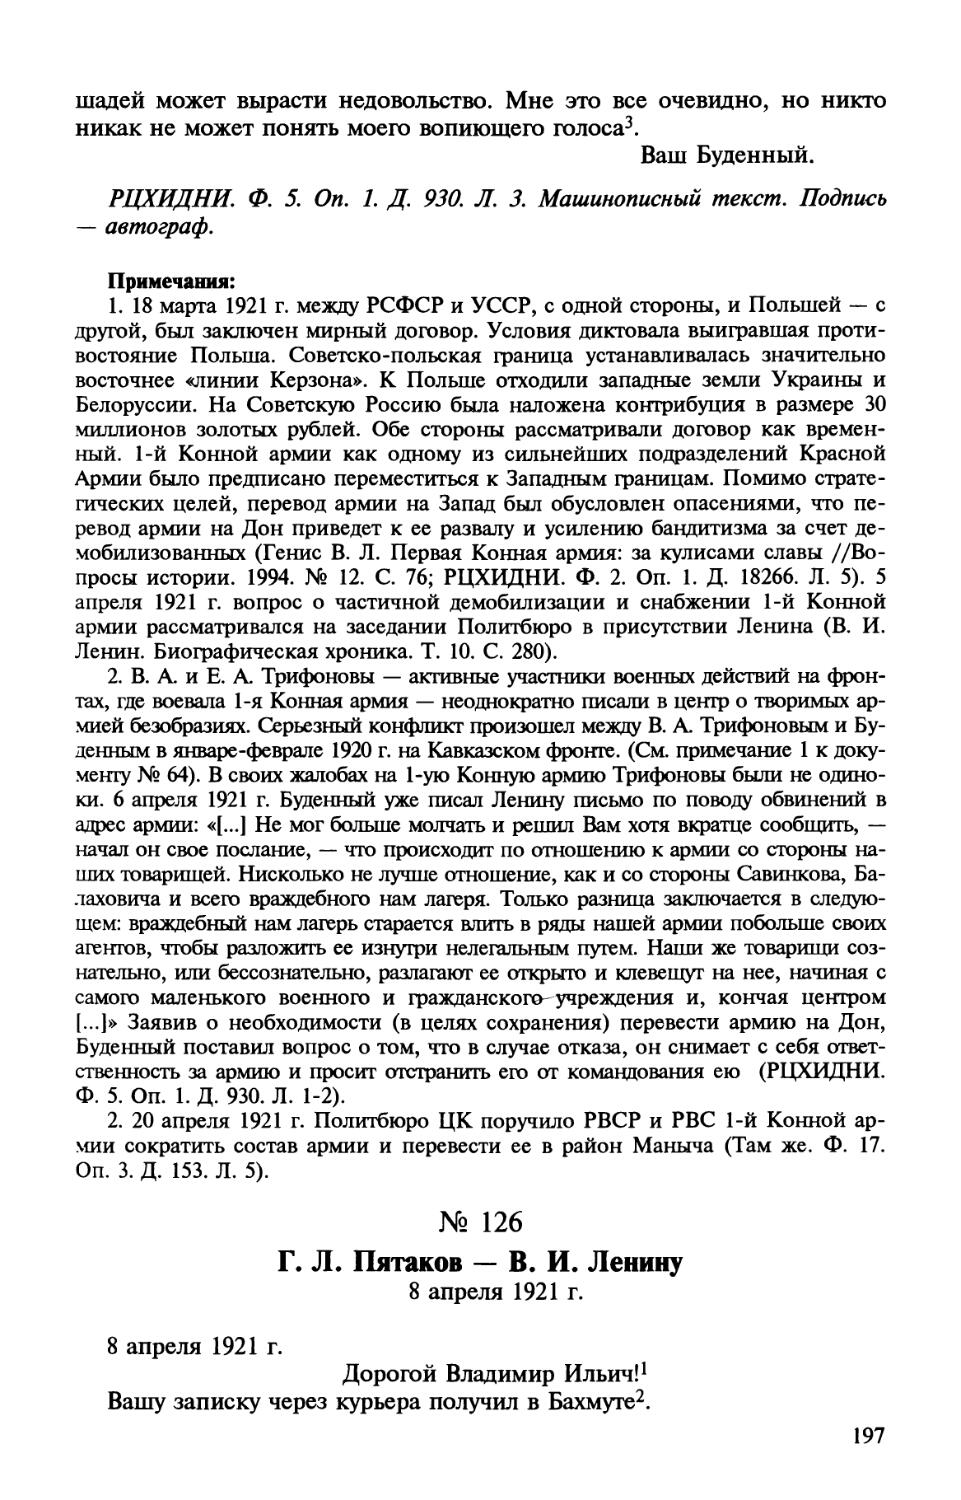 126. Г. Л. Пятаков — В. И. Ленину. 8 апреля 1921 г.